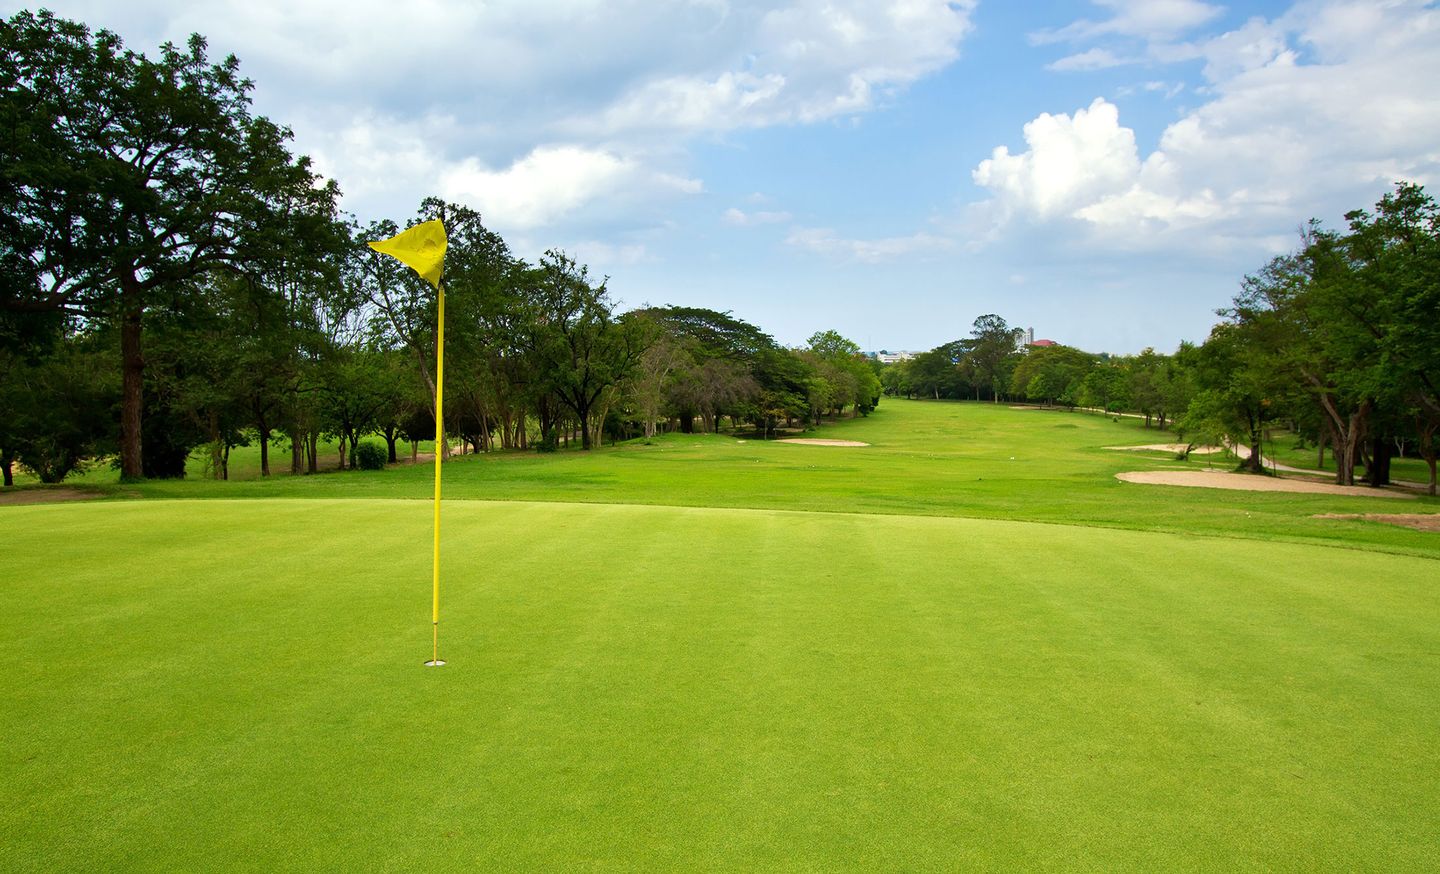 Viet Green Golf, sân golf Đồ Sơn Hải Phòng